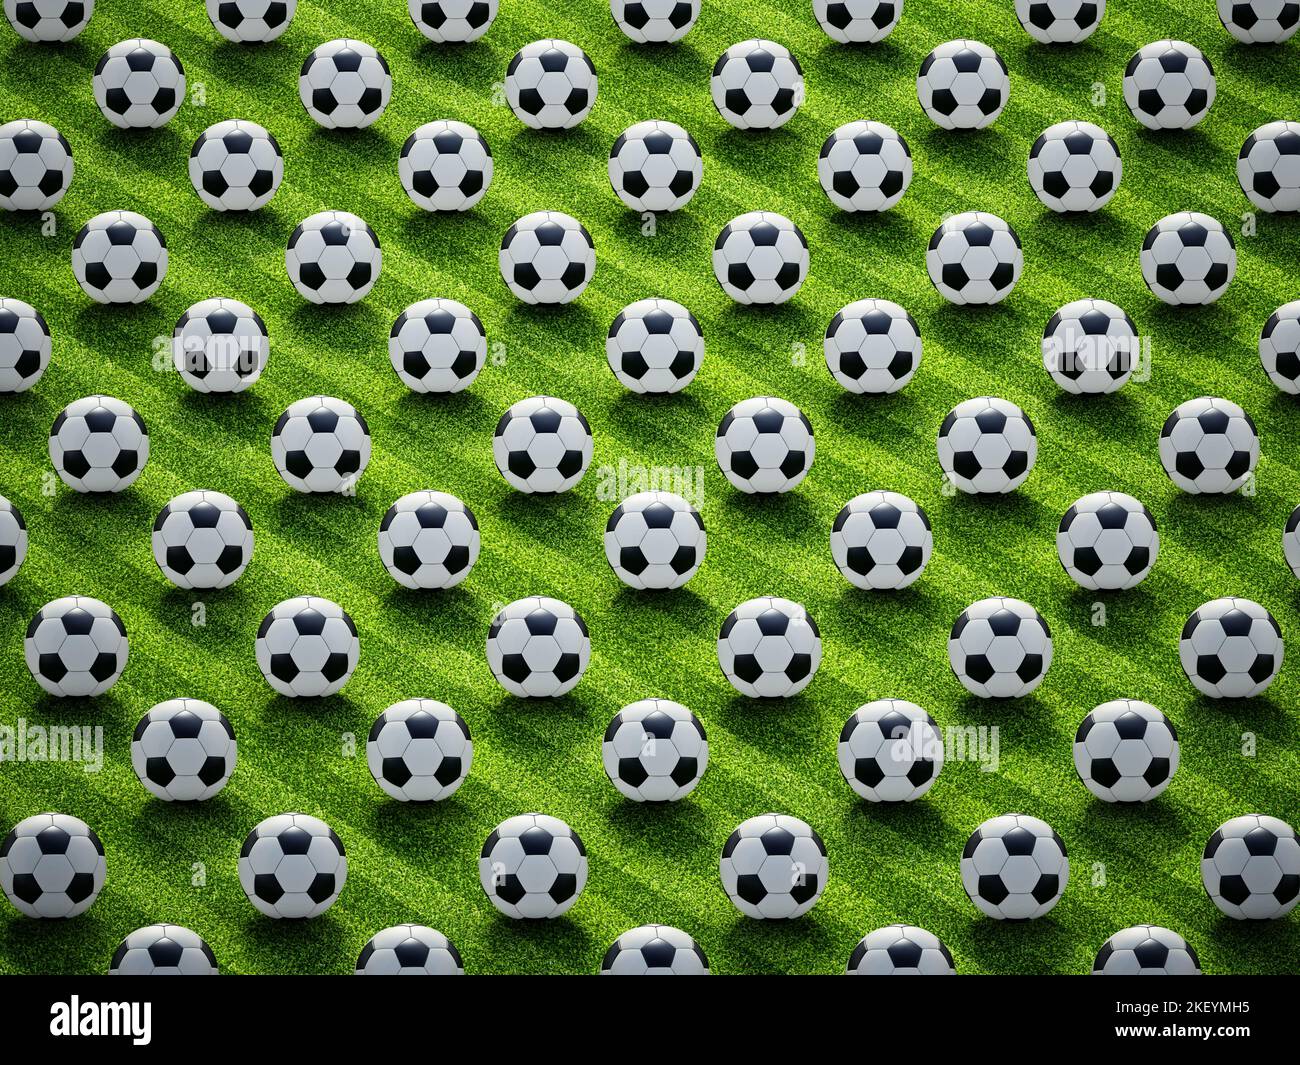 Grupo de balones de fútbol en el campo de fútbol. Foto de stock